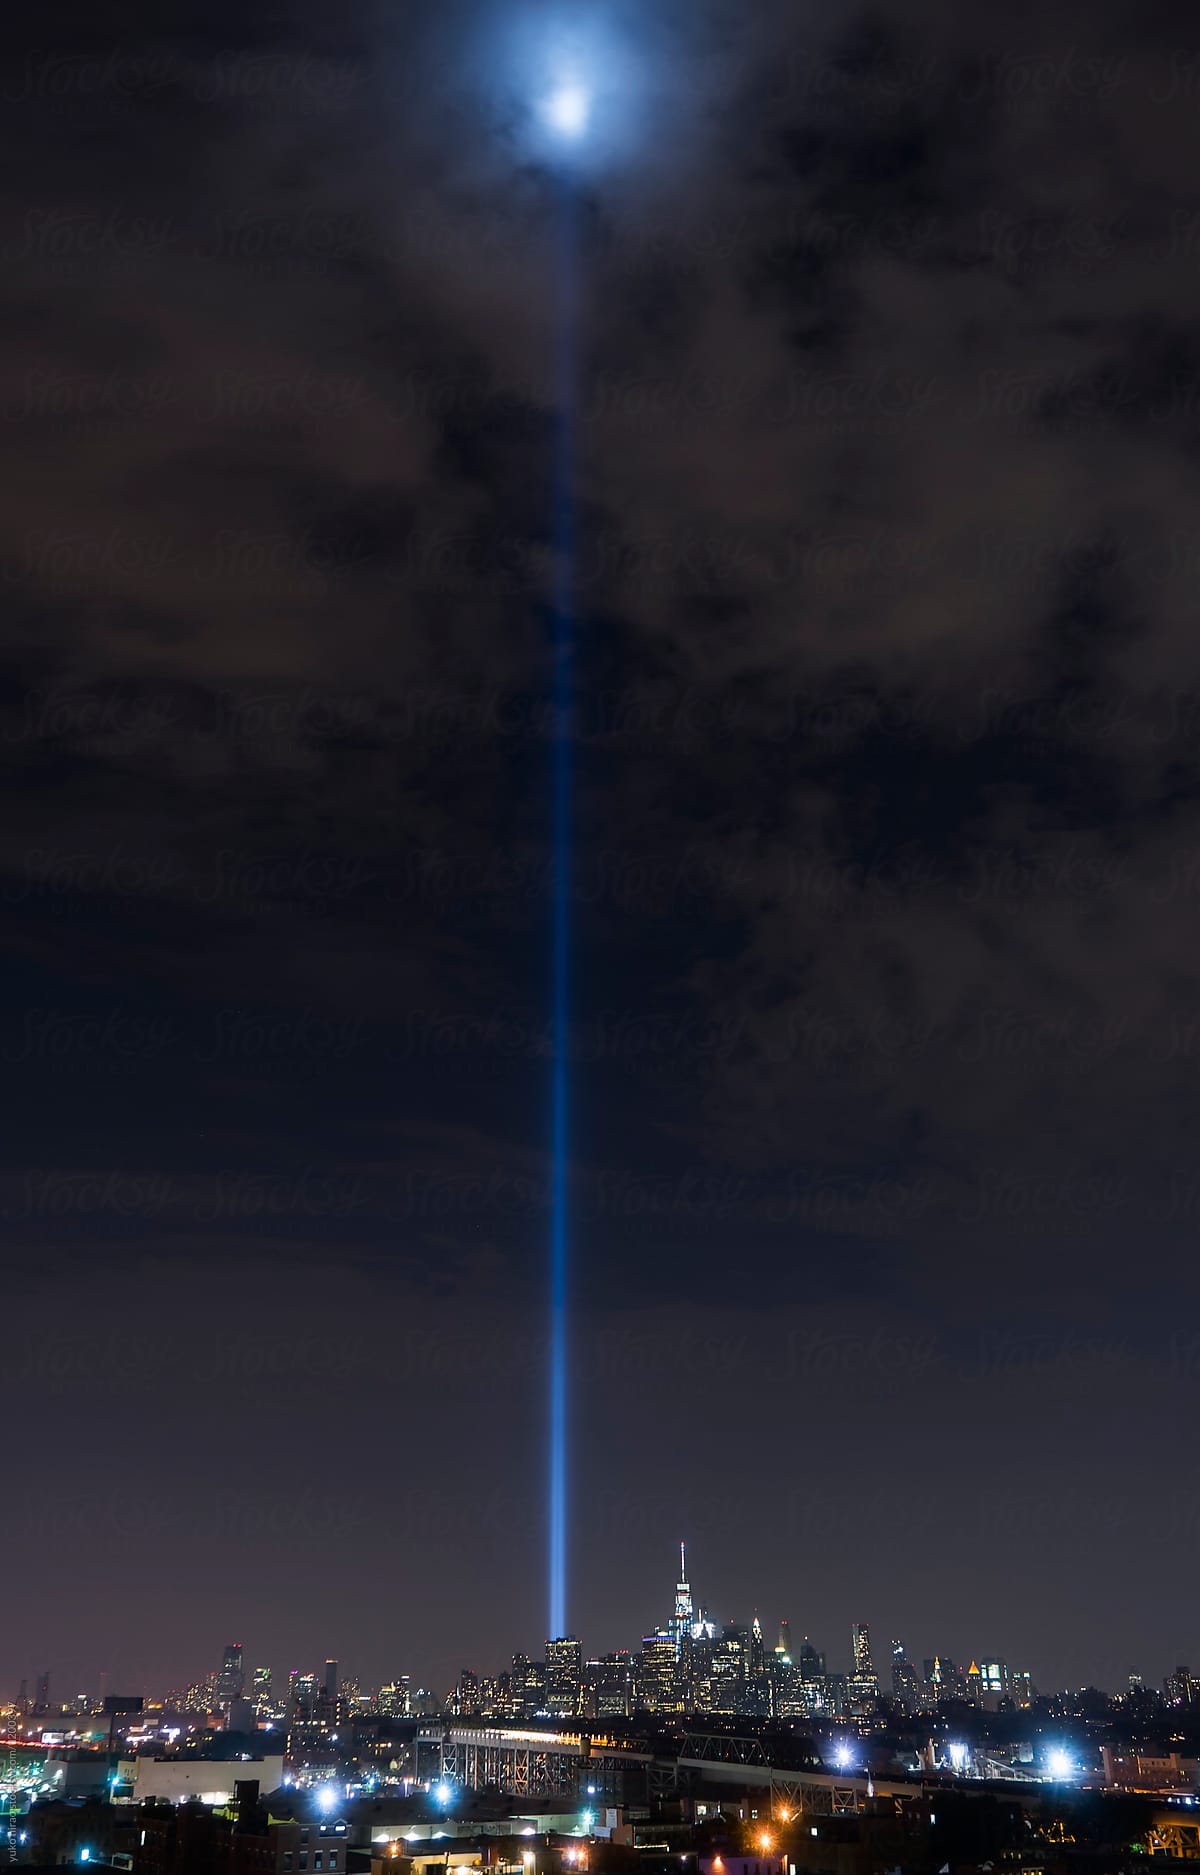 9/11 Memorial - beams of light of World Trade Center